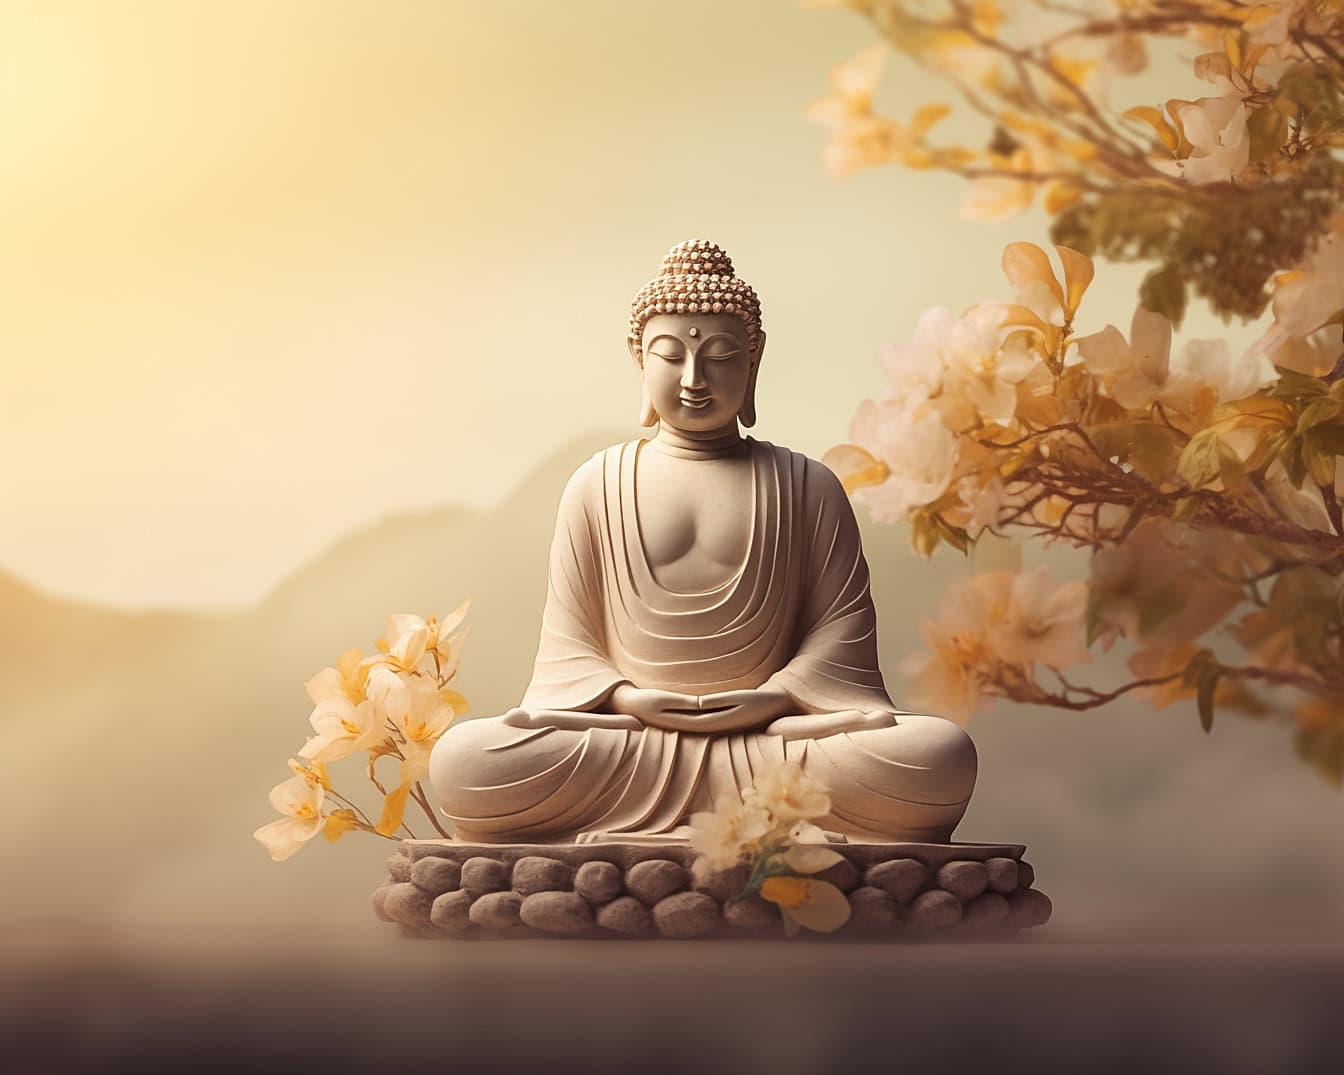 Patung Buddha dalam meditasi Zen transendental sambil duduk di atas batu melayang dengan bunga dan sinar matahari keemasan sebagai latar belakang